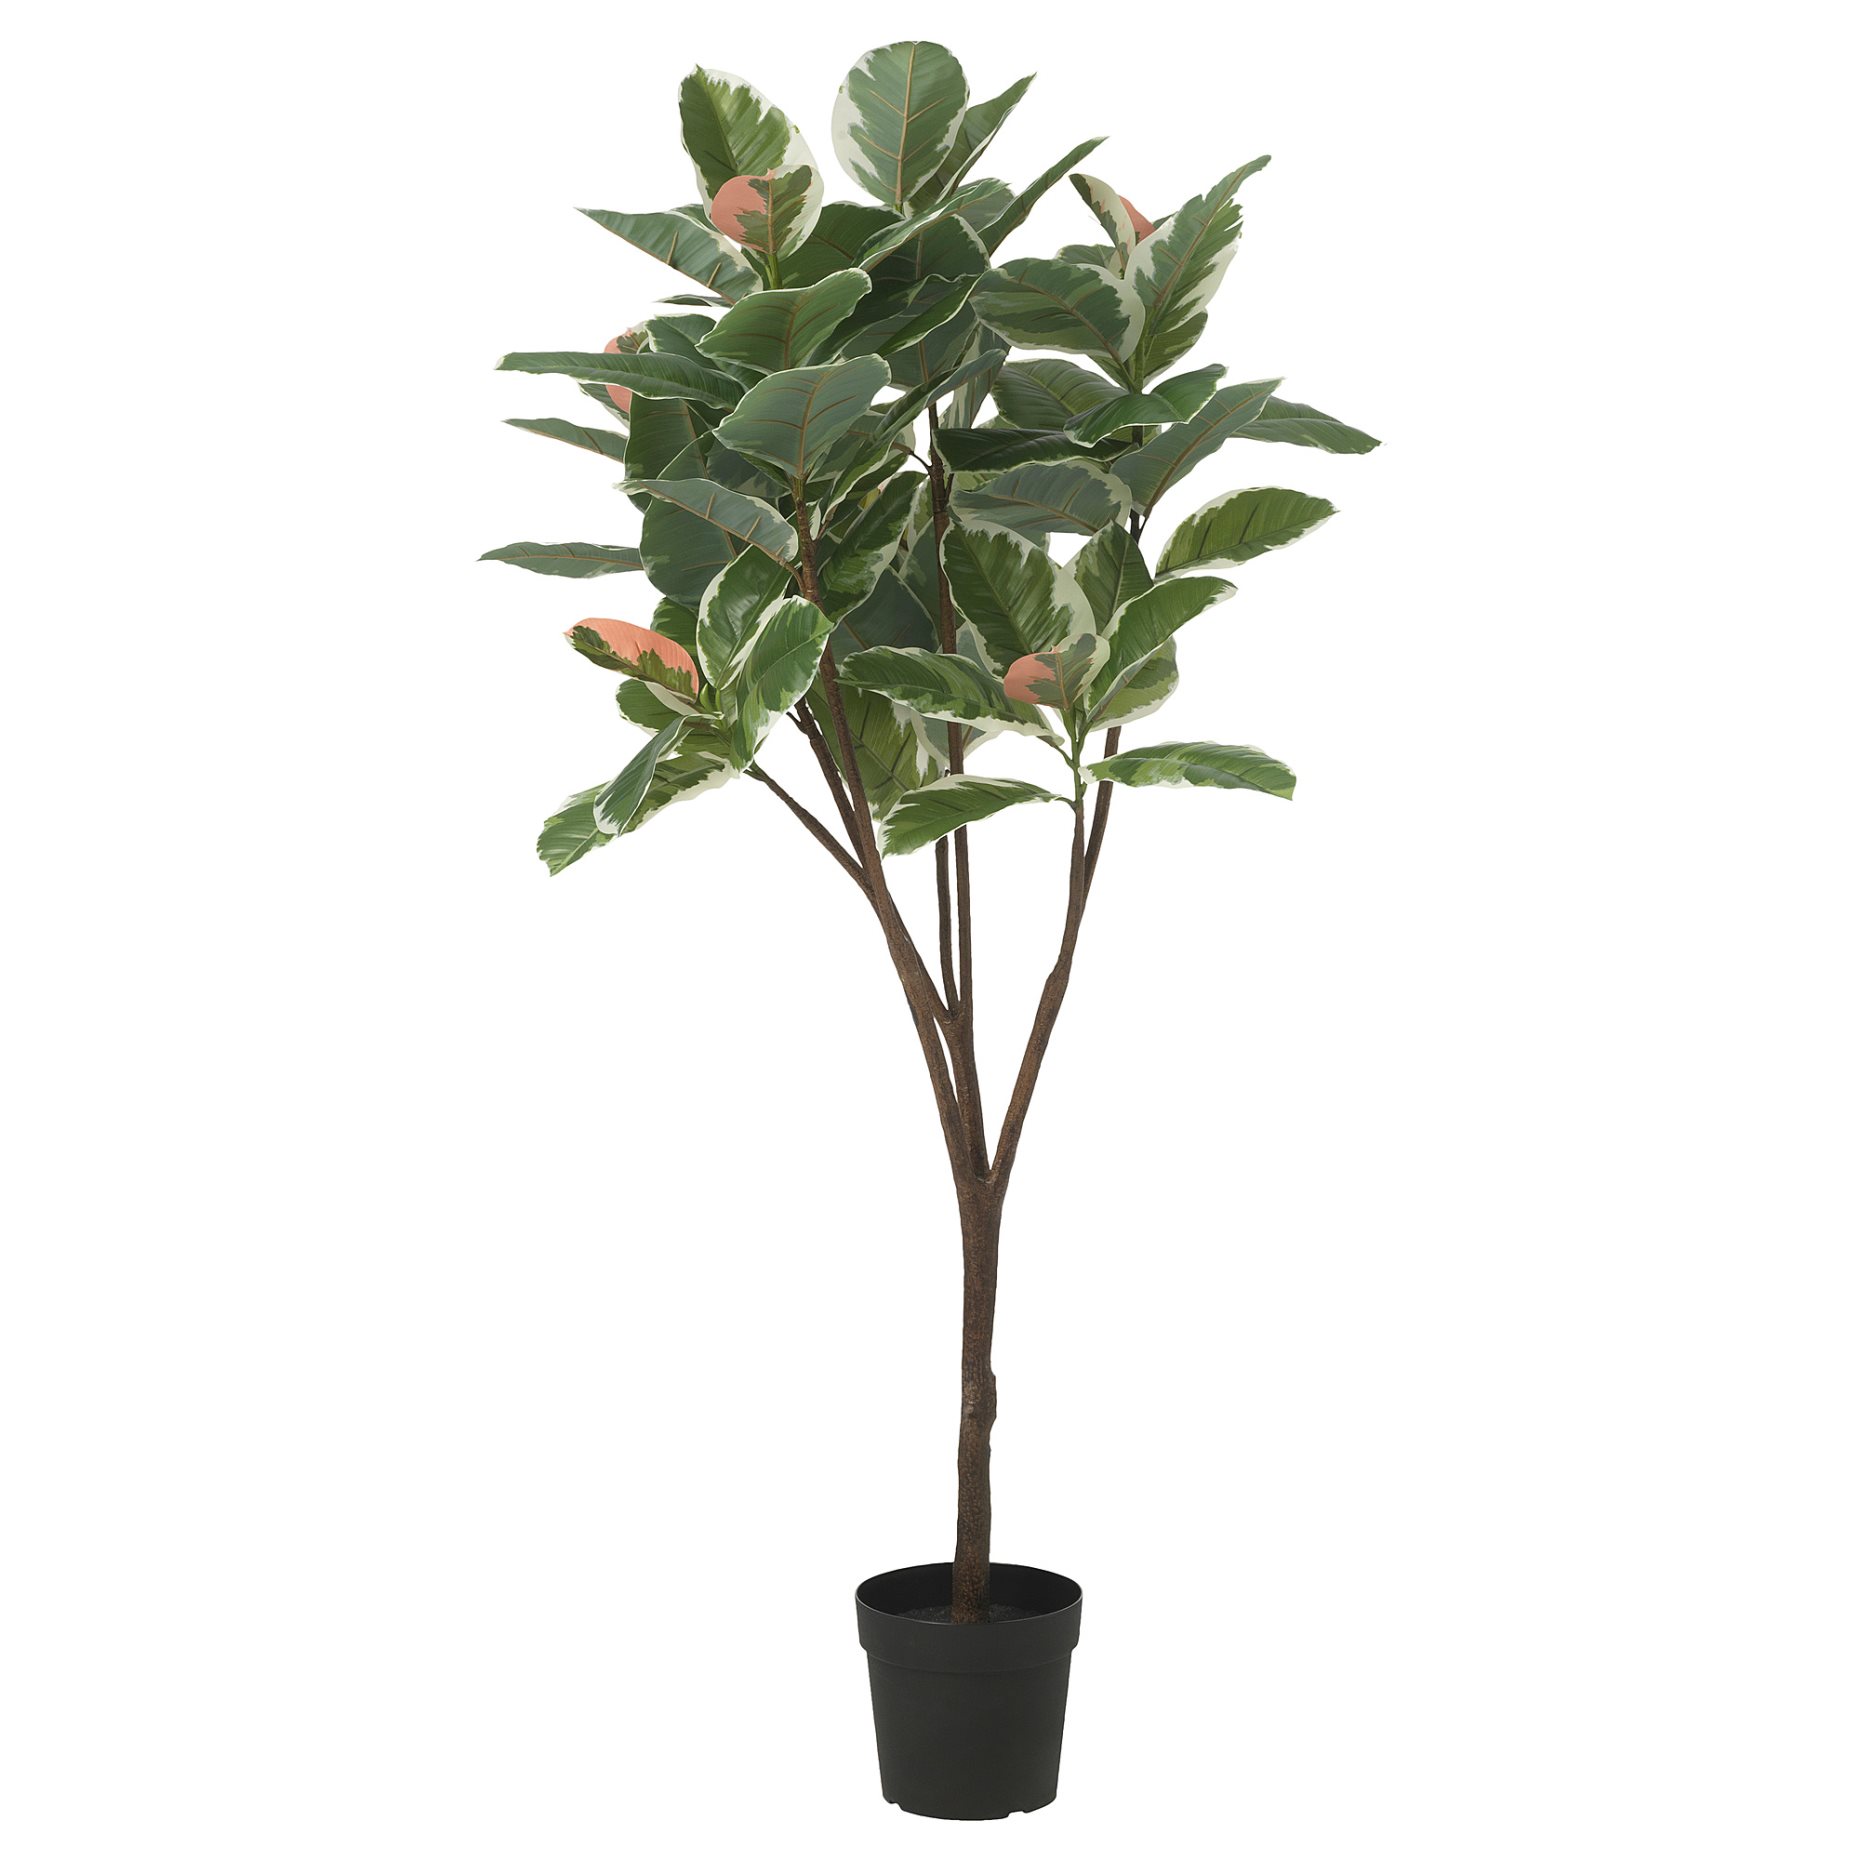 FEJKA, τεχνητό φυτό σε γλάστρα/εσωτερικού/εξωτερικού χώρου/Φυτό καουτσούκ, 23 cm, 605.483.13